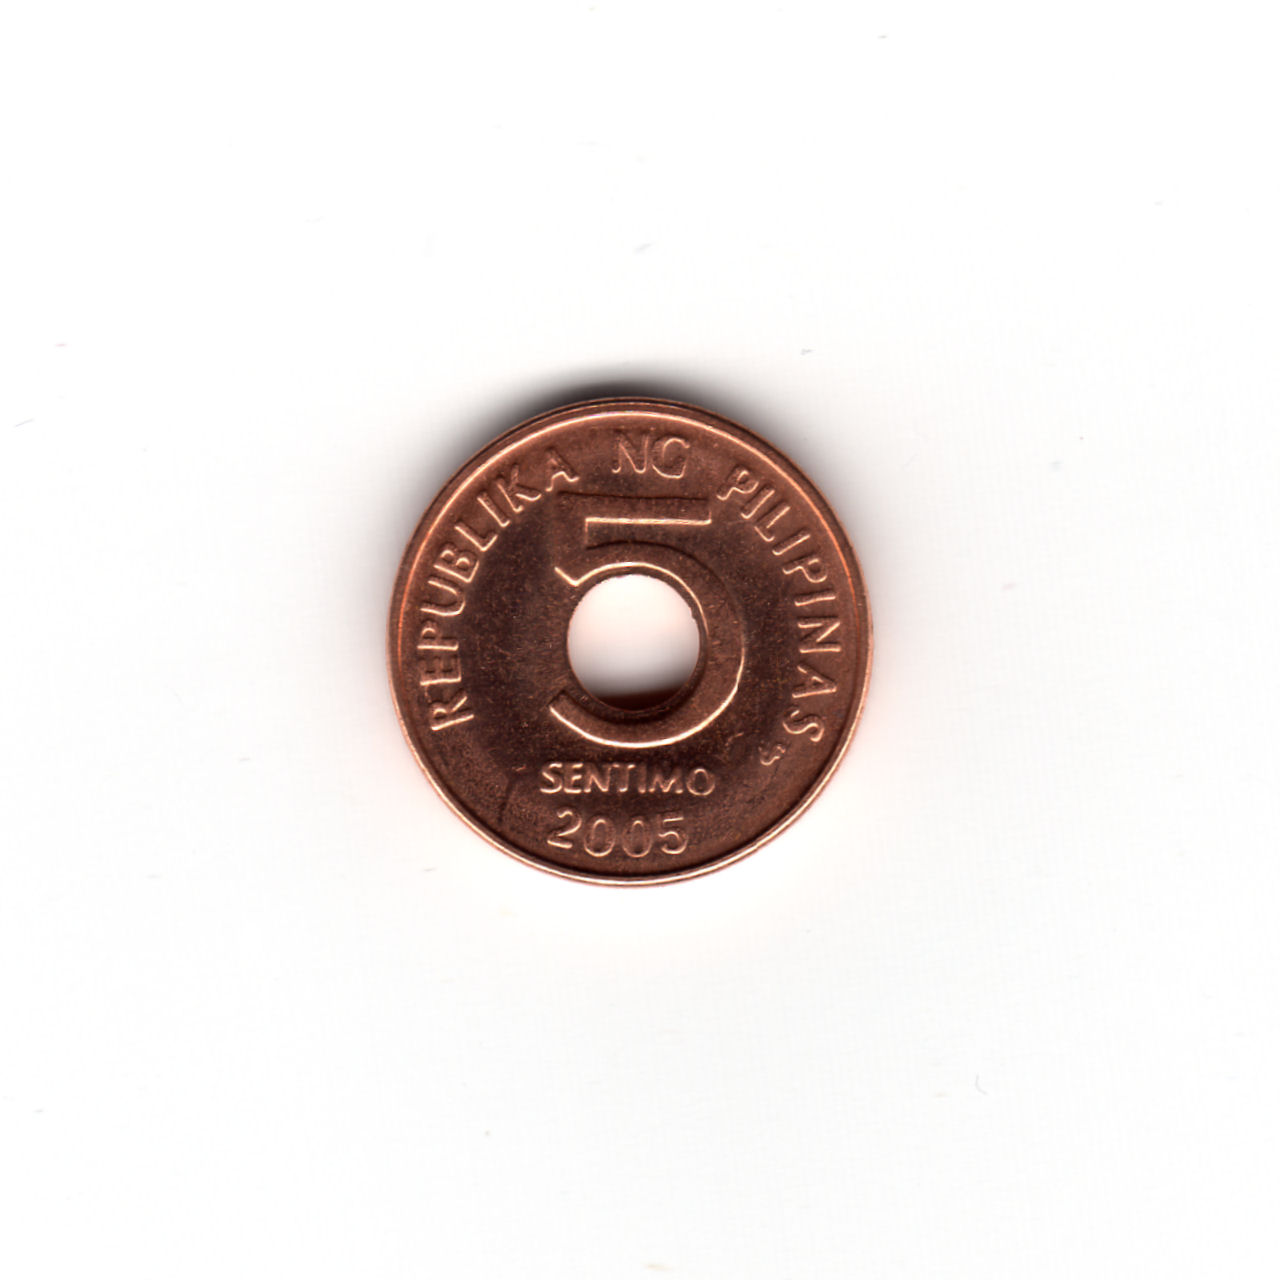 フィリピンの硬貨 2005年 5 SENTIMO